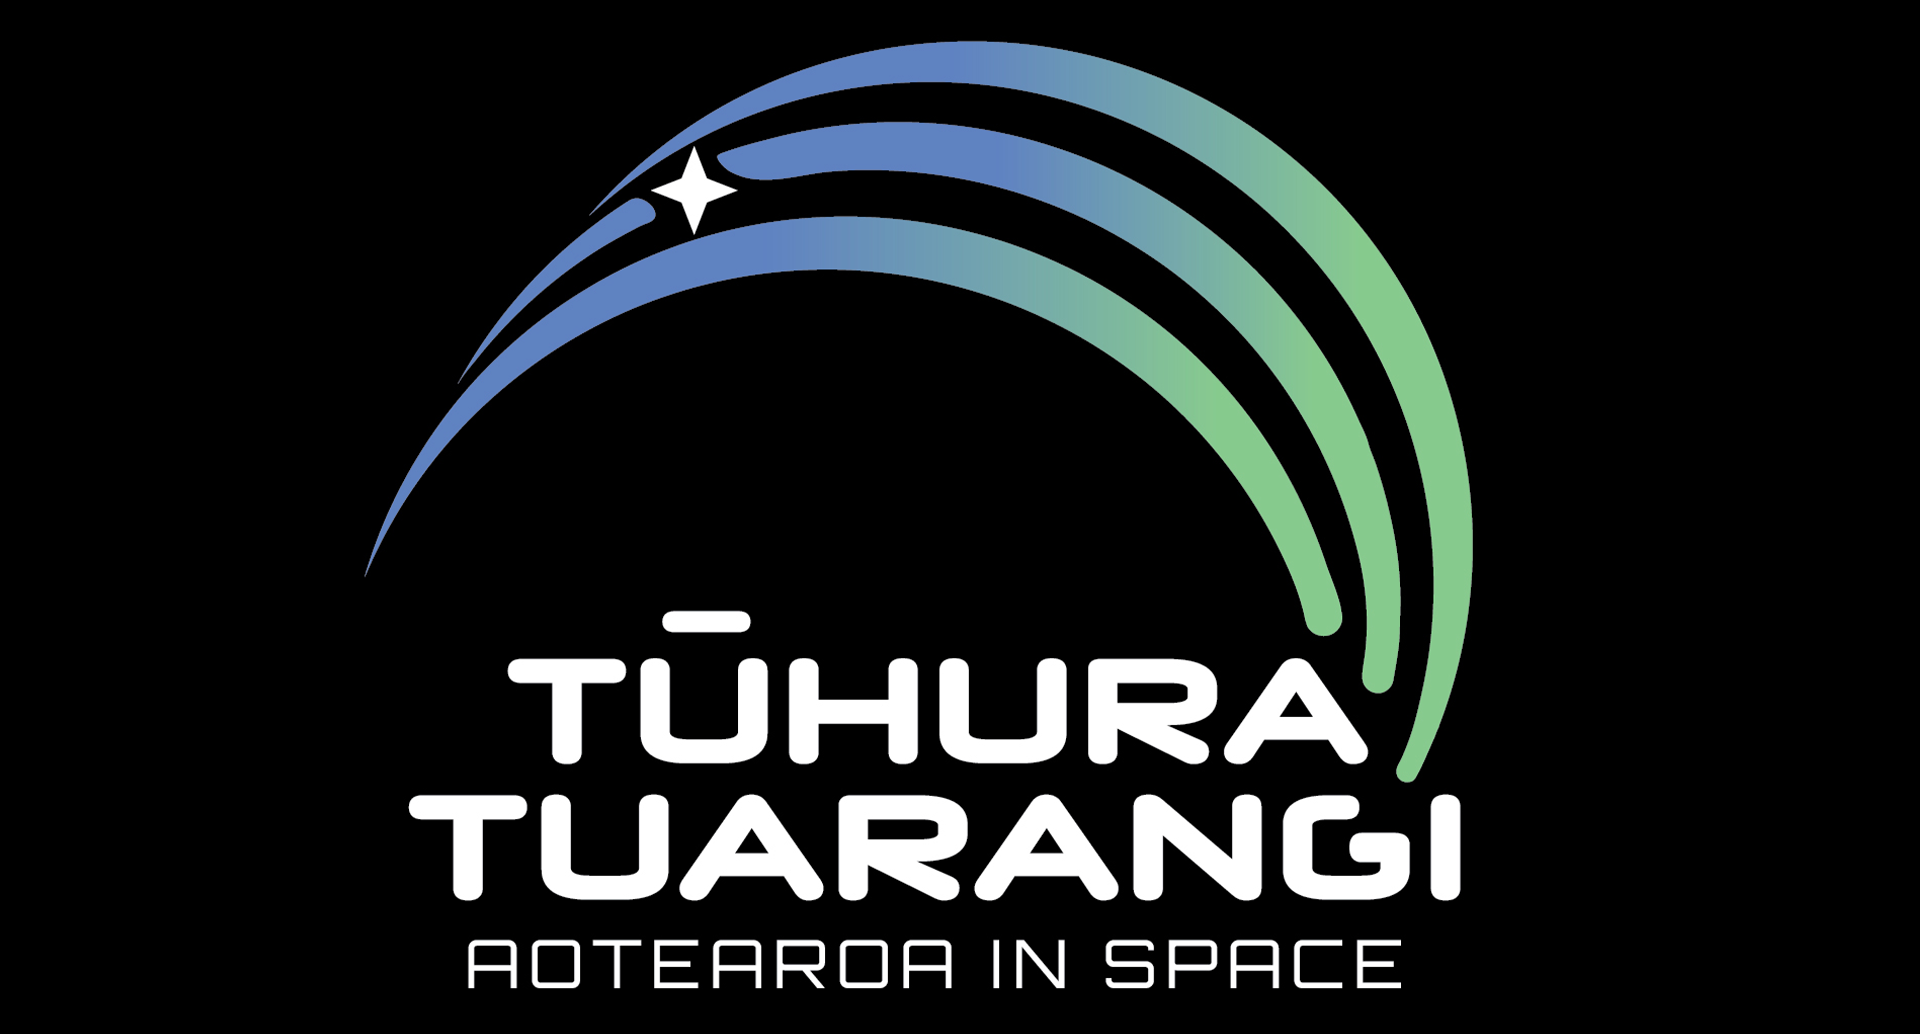 Tūhura Tuarangi bringt die Weltraumwissenschaft in Ashburton auf die nächste Stufe